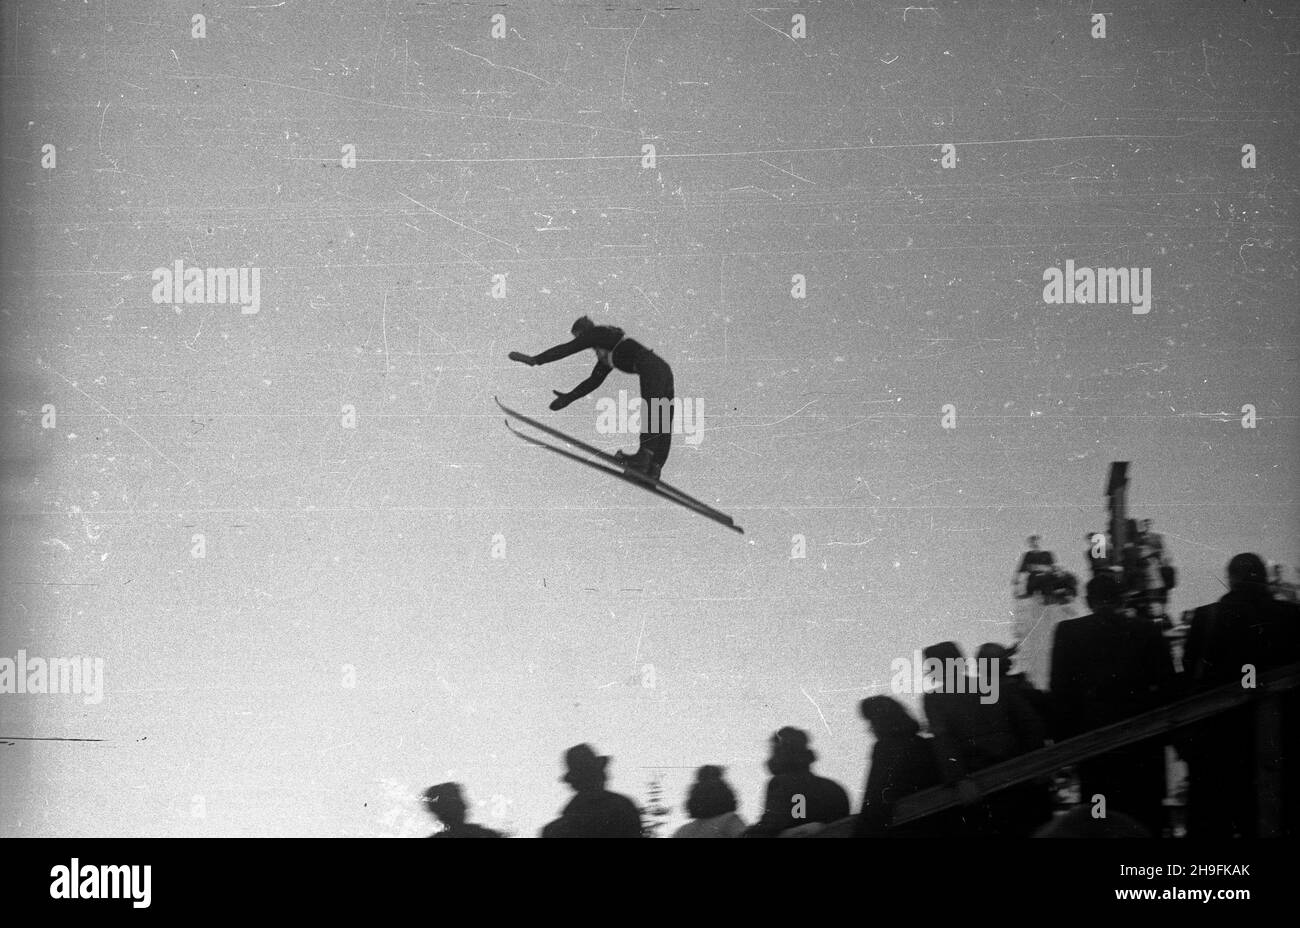 Karpacz, 1948-02-22. W dniach 19-23 lutego odbywa³y siê XXIII Mistrzostwa Narciarskie Polski. Zawody w skokach narciarskich rozegrano na skoczni Orlinek. Wygra³ je Stanis³aw Marusarz. Nz. skok jednego z zawodników. pw  PAP    Karpacz, Feb. 22, 1948. The 23rd Poland's Skiing Championship was held on February 19-23. Stanislaw Marusarz won a ski jumping competition which was held at the Orlinek ski jump. Pictured: a jump.  pw  PAP Stock Photo